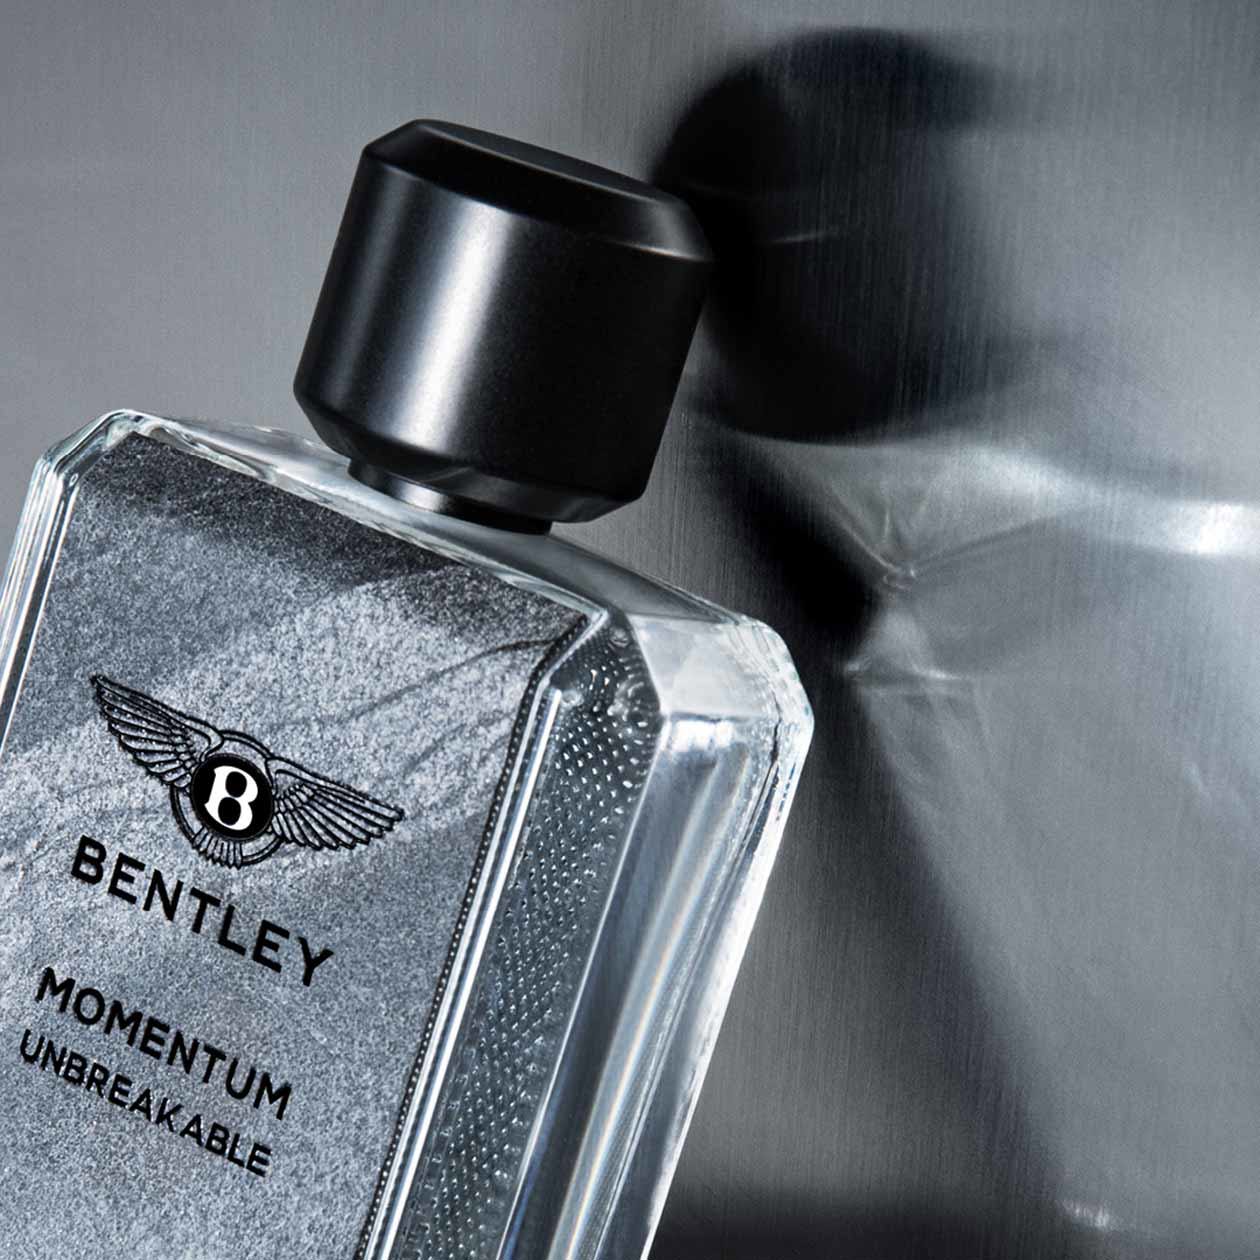 Bentley Momentum Unbreakable Eau de Parfum